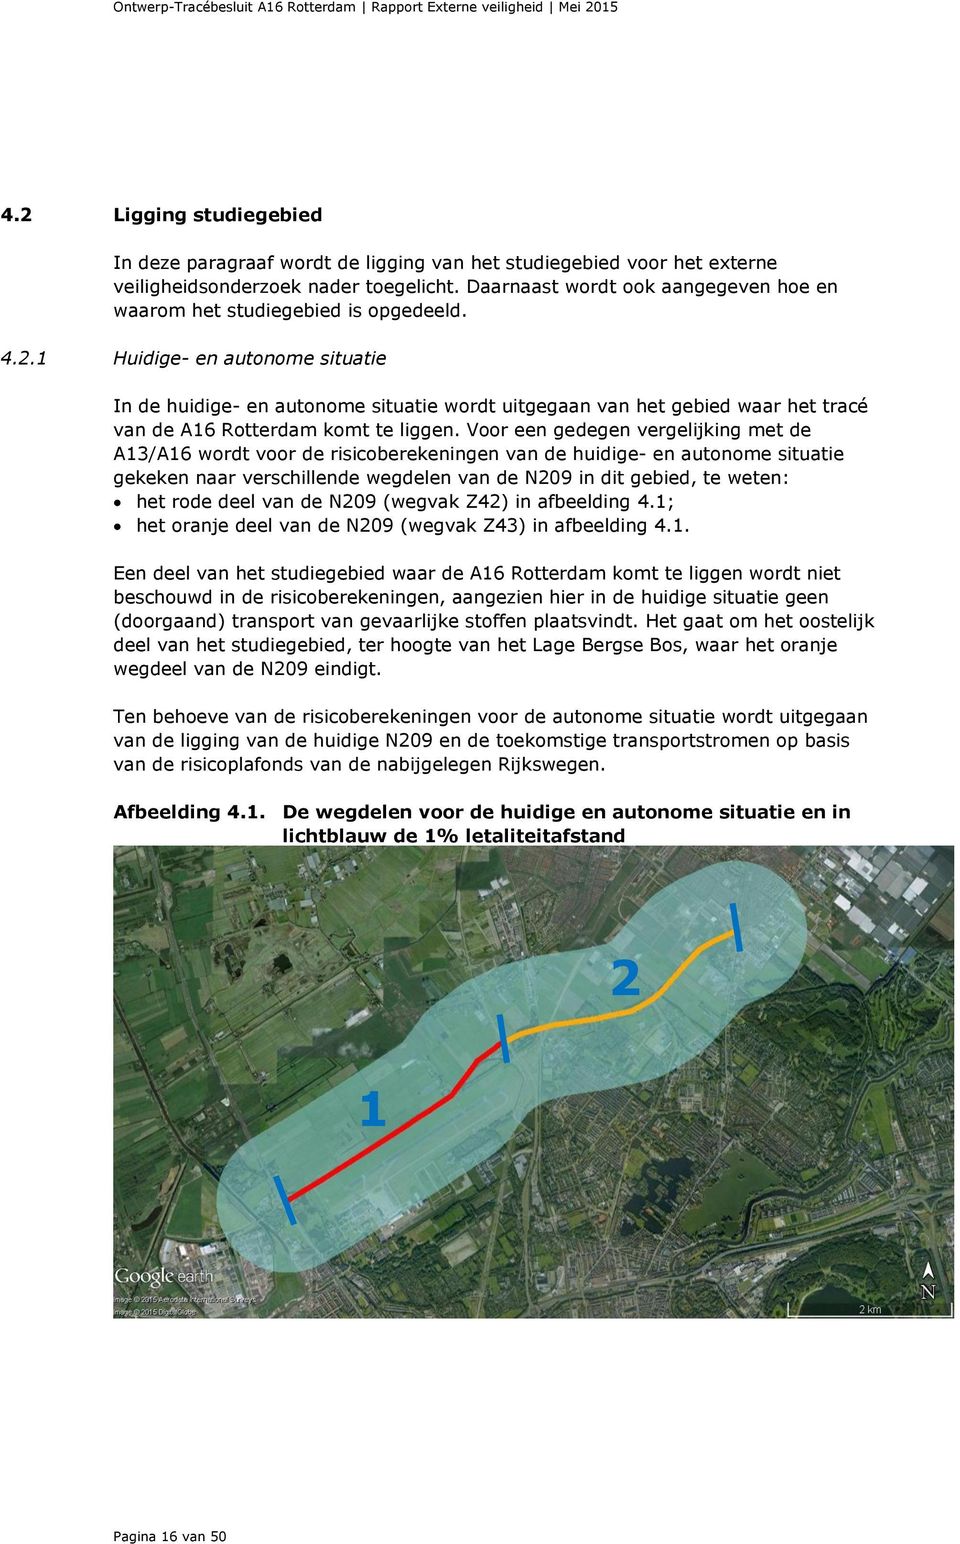 1 Huidige- en autonome situatie In de huidige- en autonome situatie wordt uitgegaan van het gebied waar het tracé van de A16 Rotterdam komt te liggen.